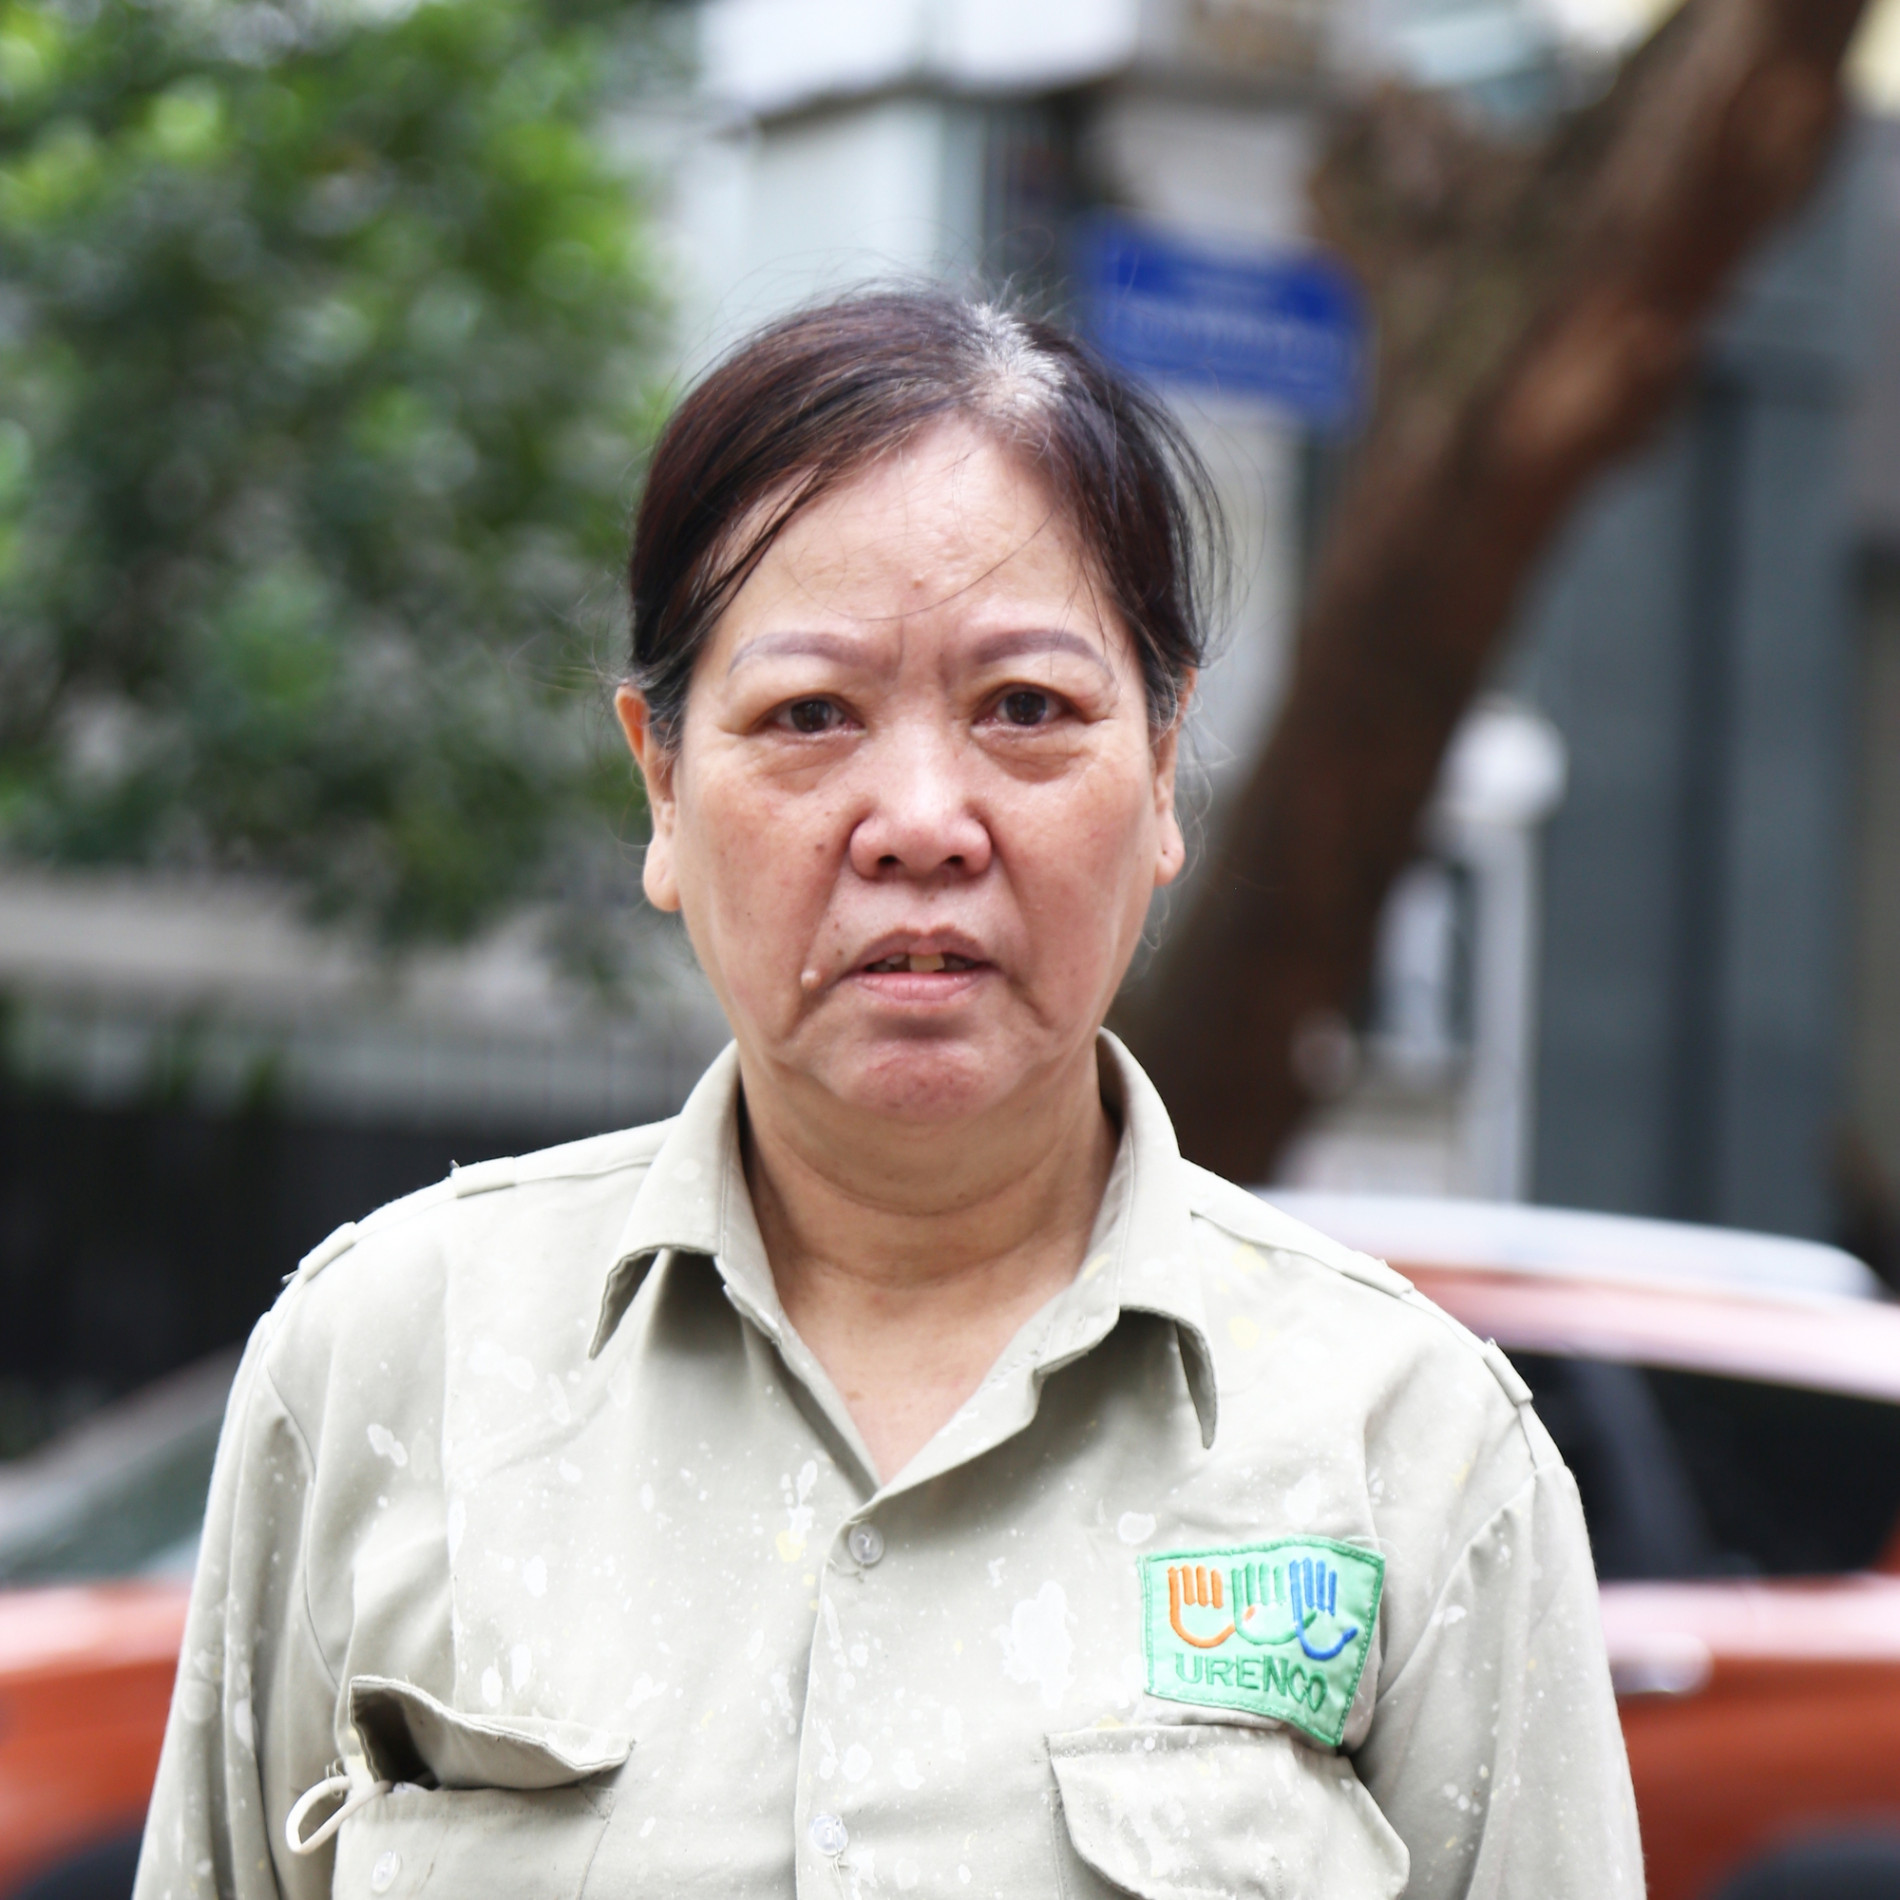 Nữ 'phu rác' 67 tuổi ở Hà Nội: 'Ngày nào tôi nghỉ làm, mẹ tôi phải nhịn thuốc'